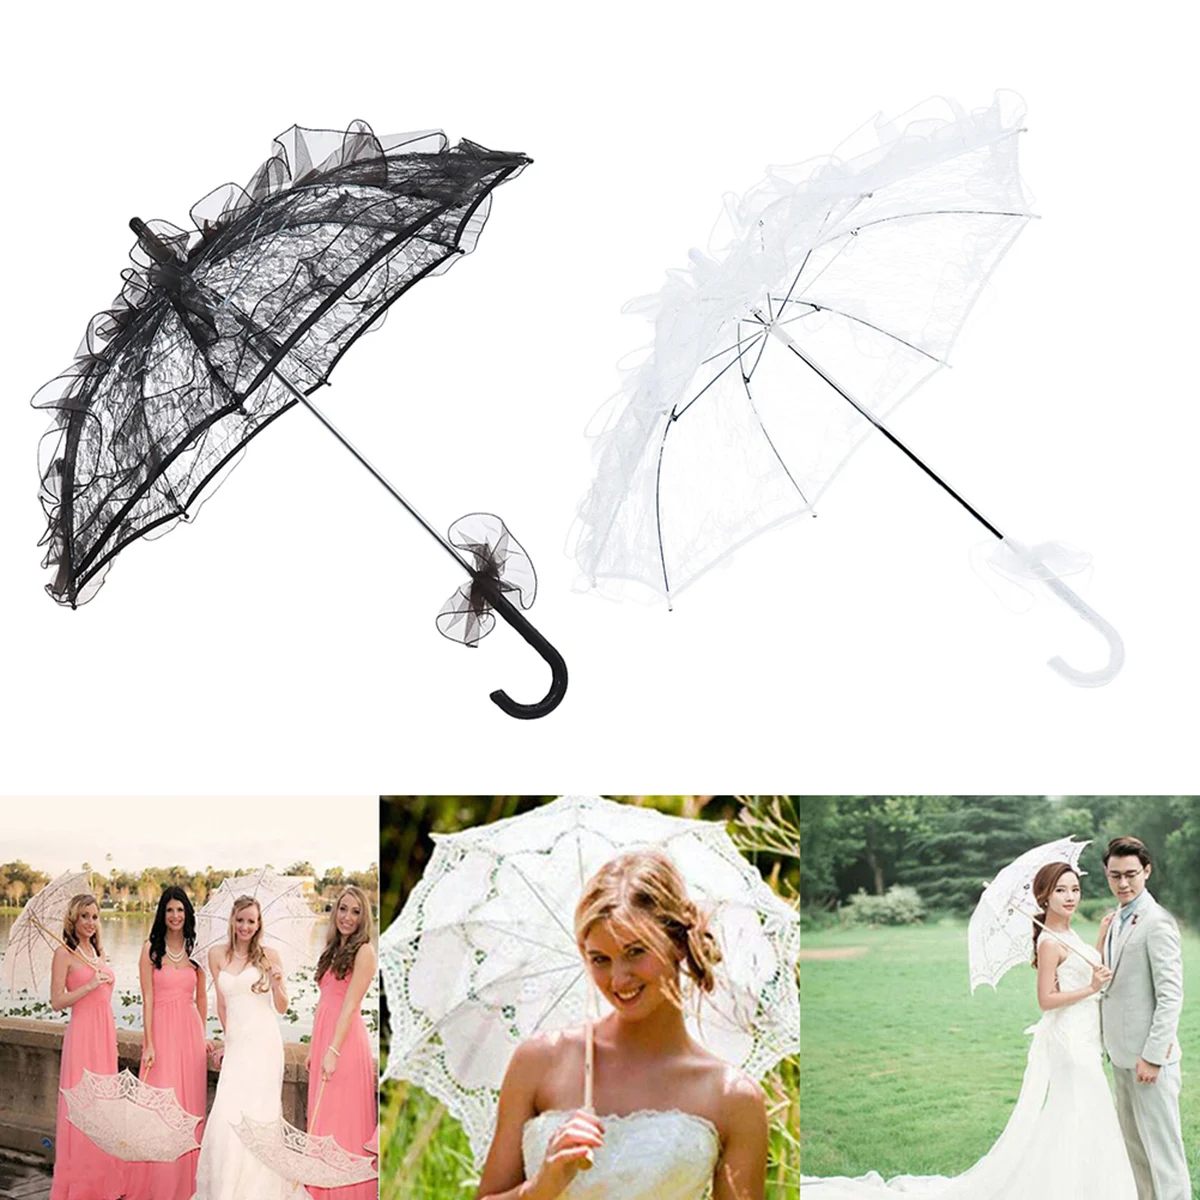 ANKKO occidental estilo romántico Lace boda sombrilla paraguas Stick paraguas para sesión de fotos color blanco 